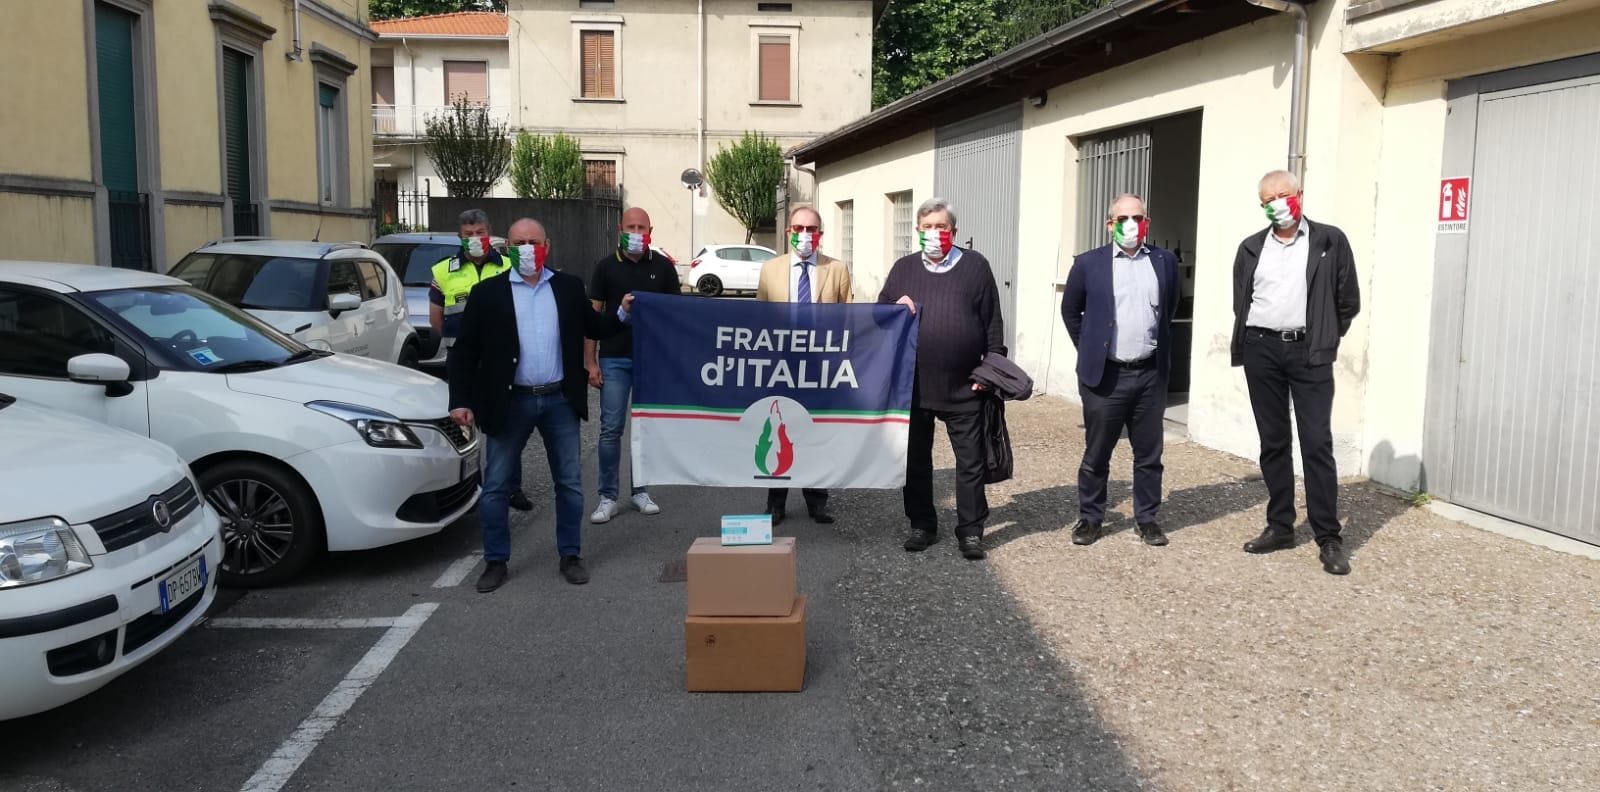 Fratelli d’Italia del Saronnese dona 500 mascherine alla comunità di Cislago